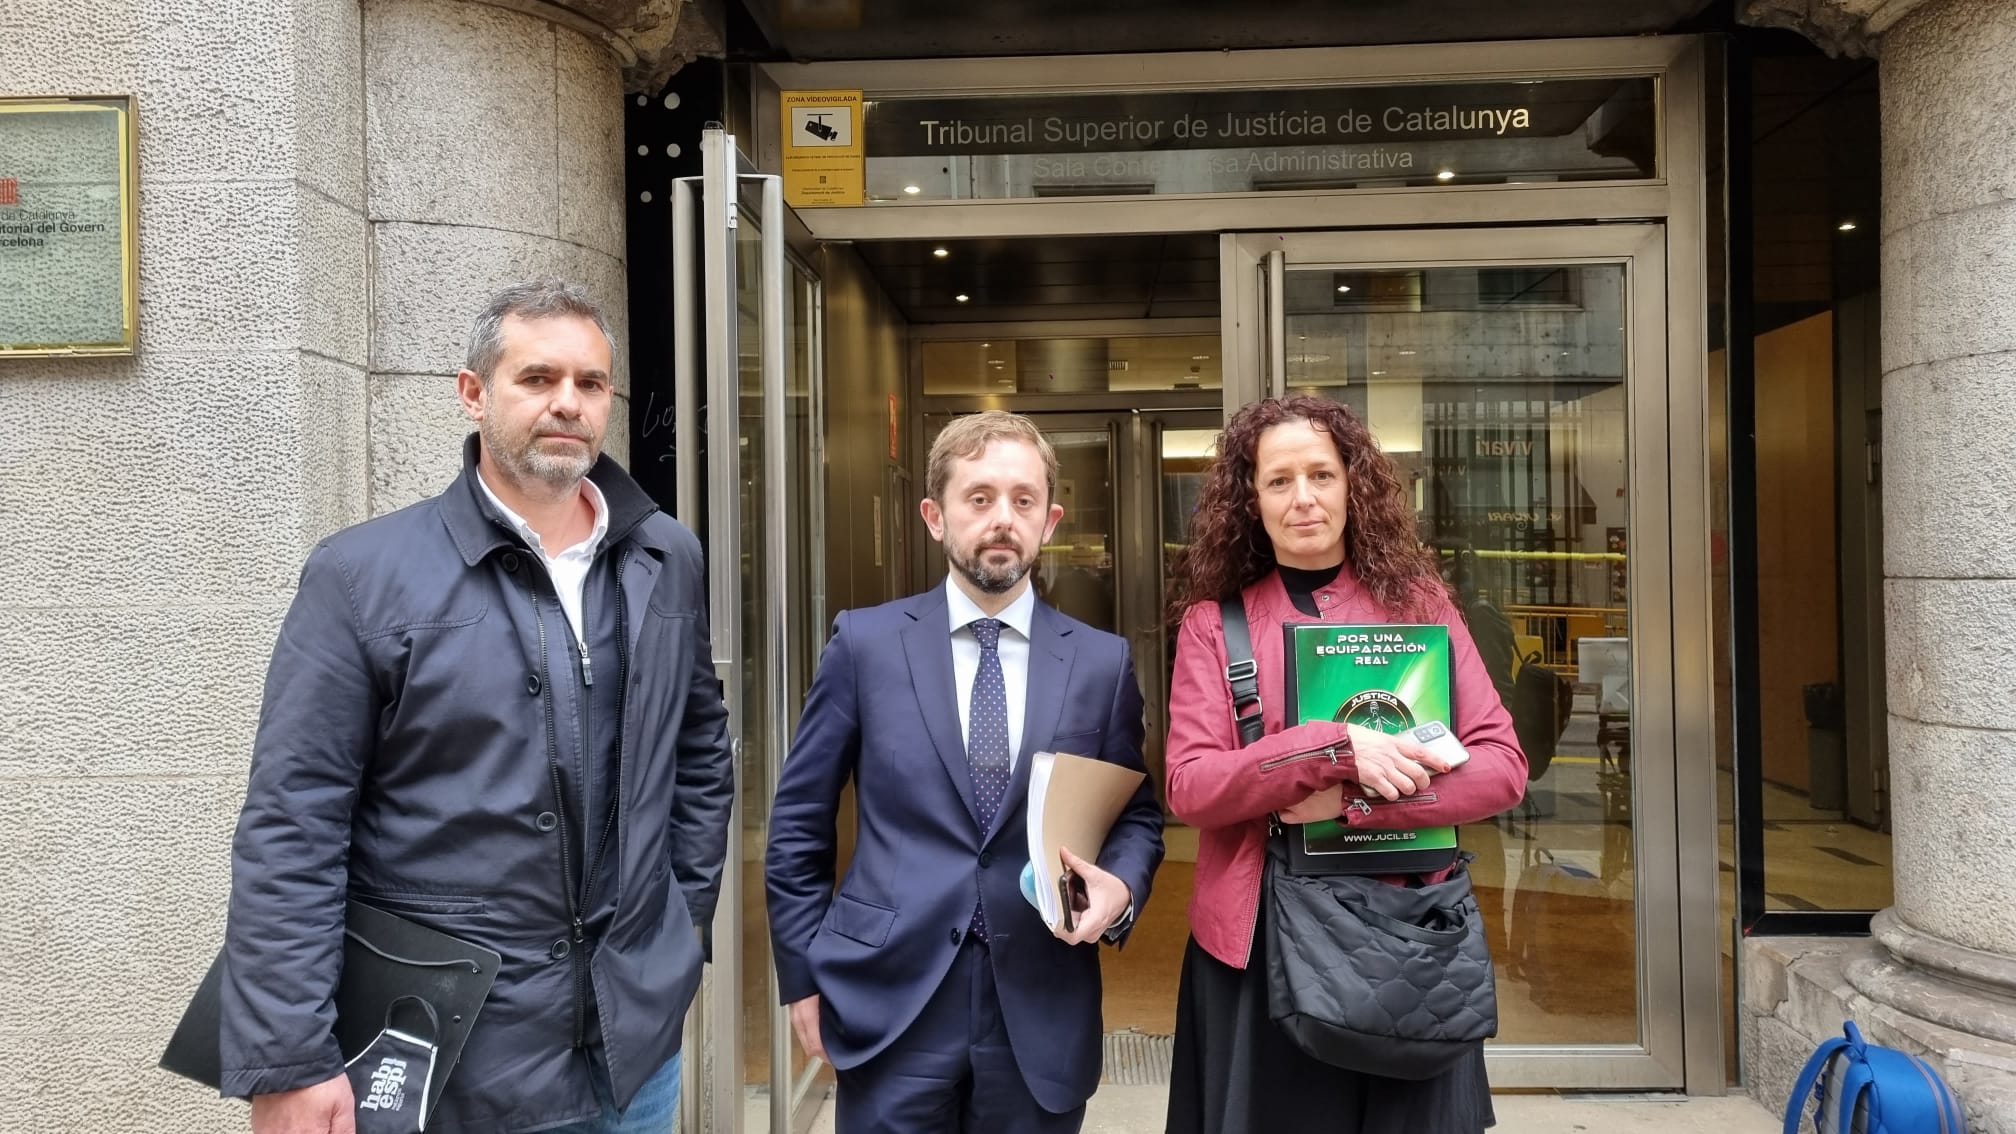 Jucil, Hablamos Español y Convivencia Cívica reclaman al gobierno catalán que indemnice con 450 euros a los afectados por el incumplimiento de la sentencia del 25%